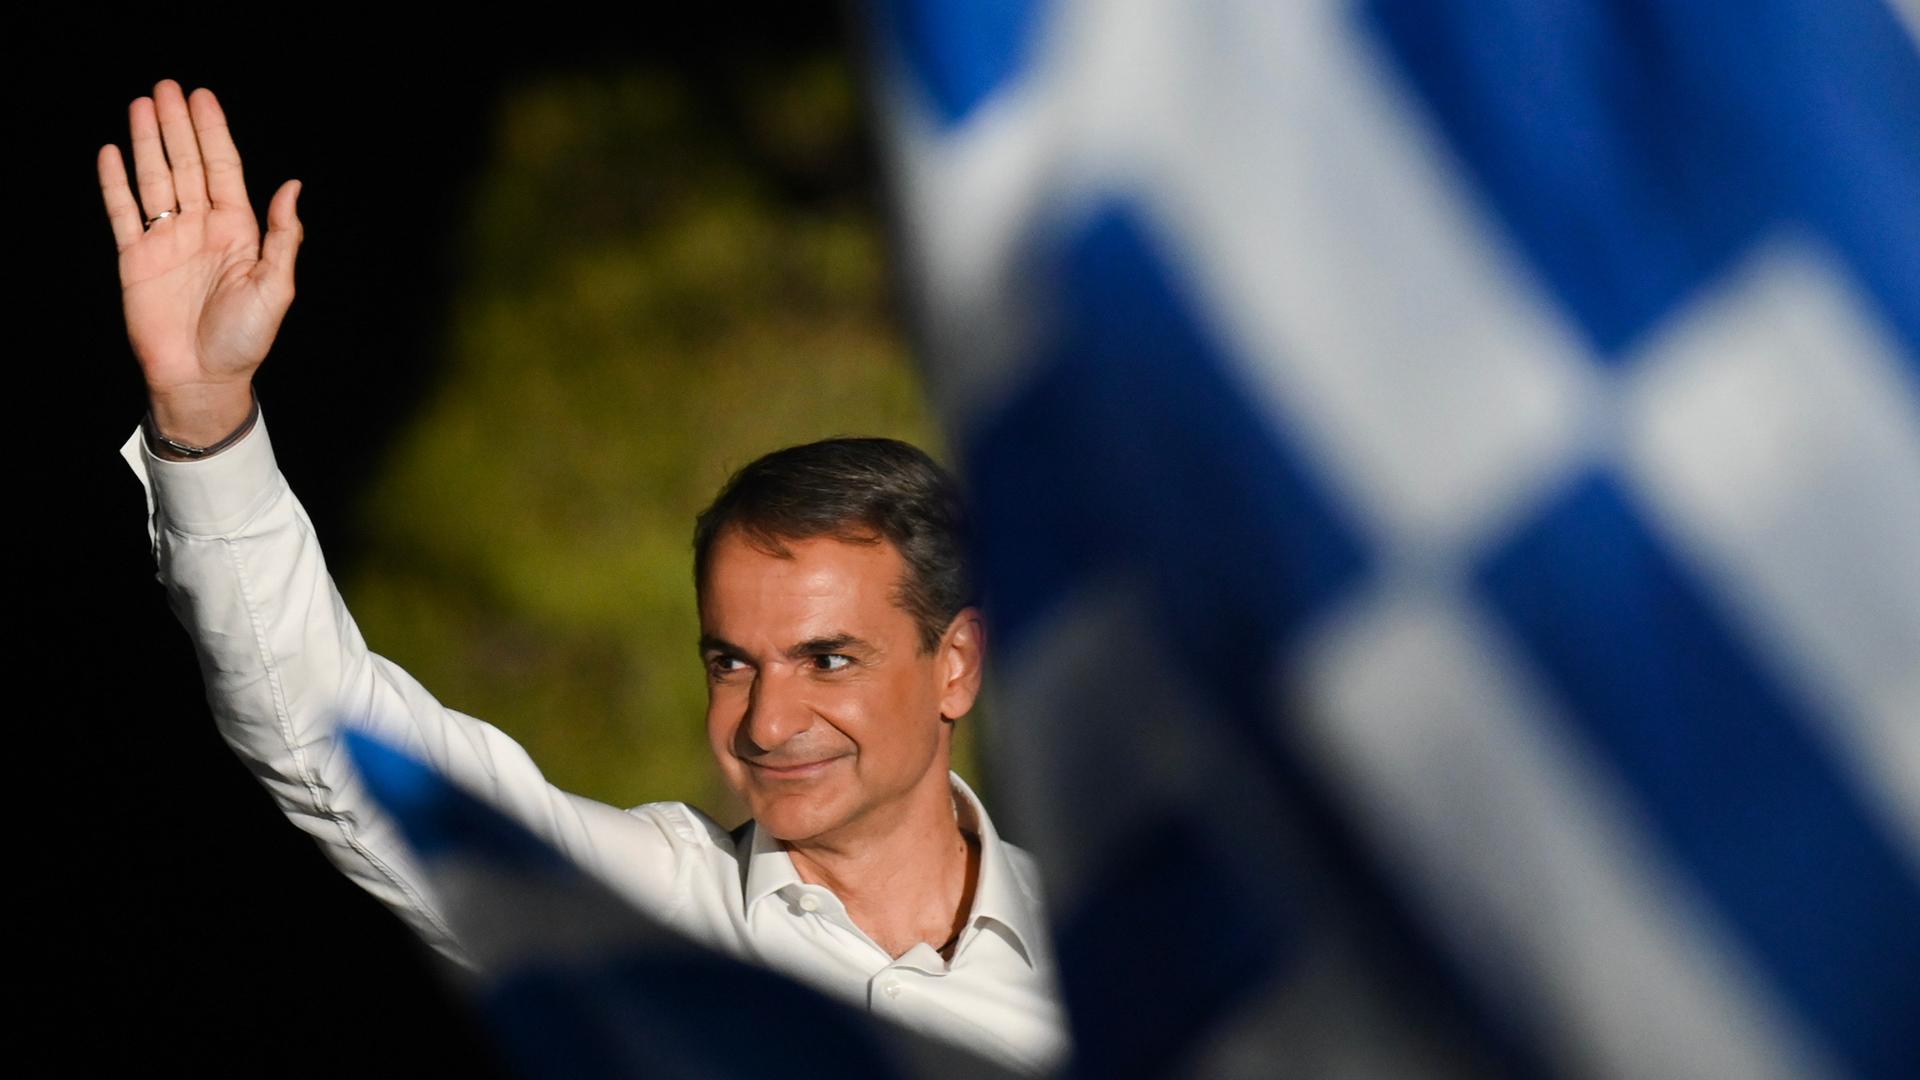 Kyriakos Mitsotakis, Ministerpräsident von Griechenland, winkt während einer Wahlkampfkundgebung vor der Akropolis. Nebendran eine verschwommene Griechenland-Flagge.